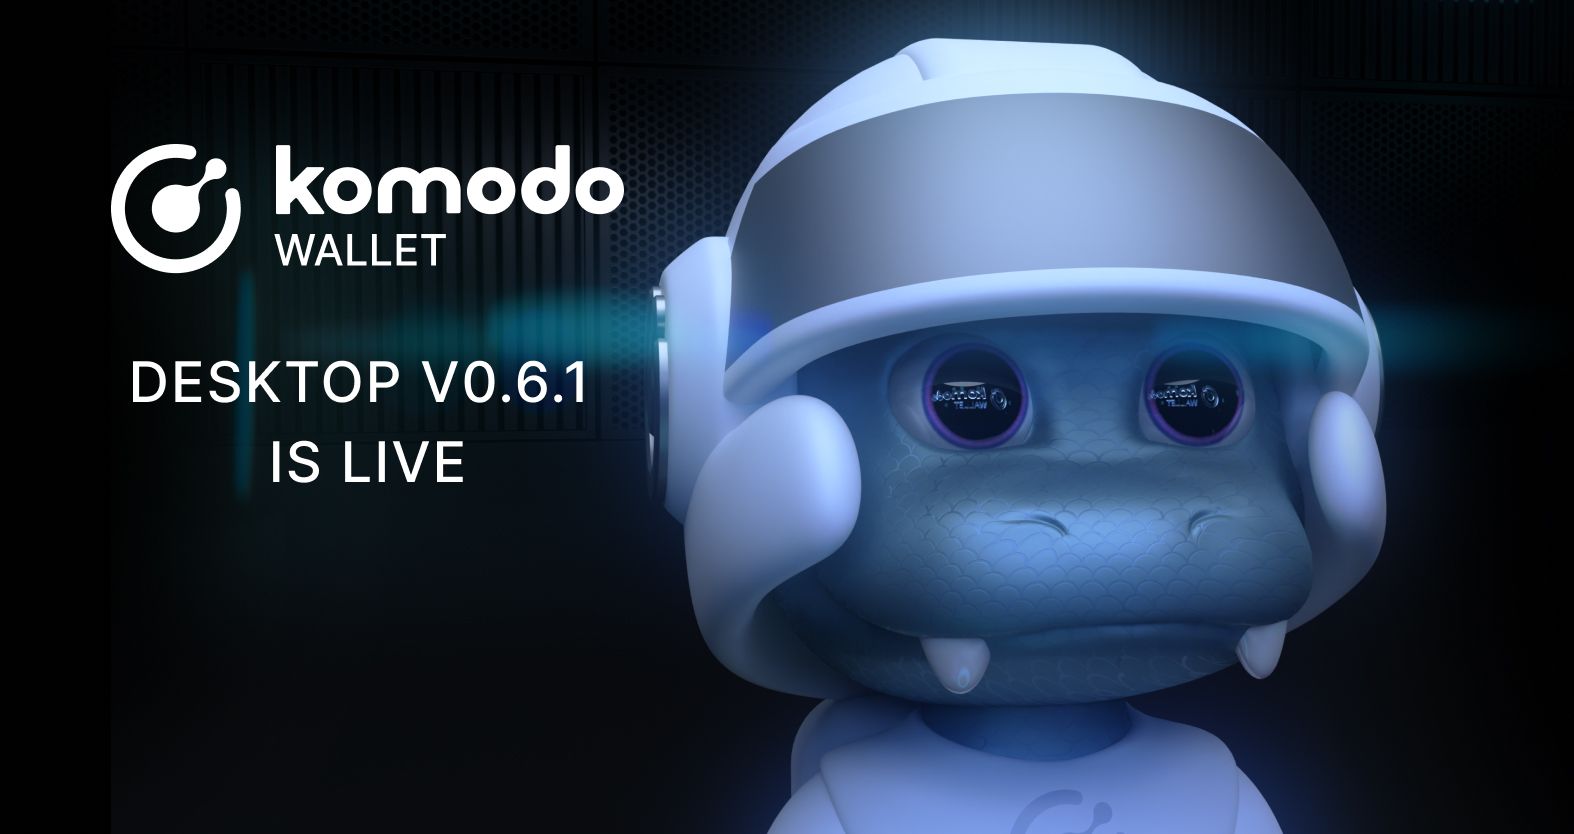 Komodo Wallet (desktop) v0.6.1 Is Live!